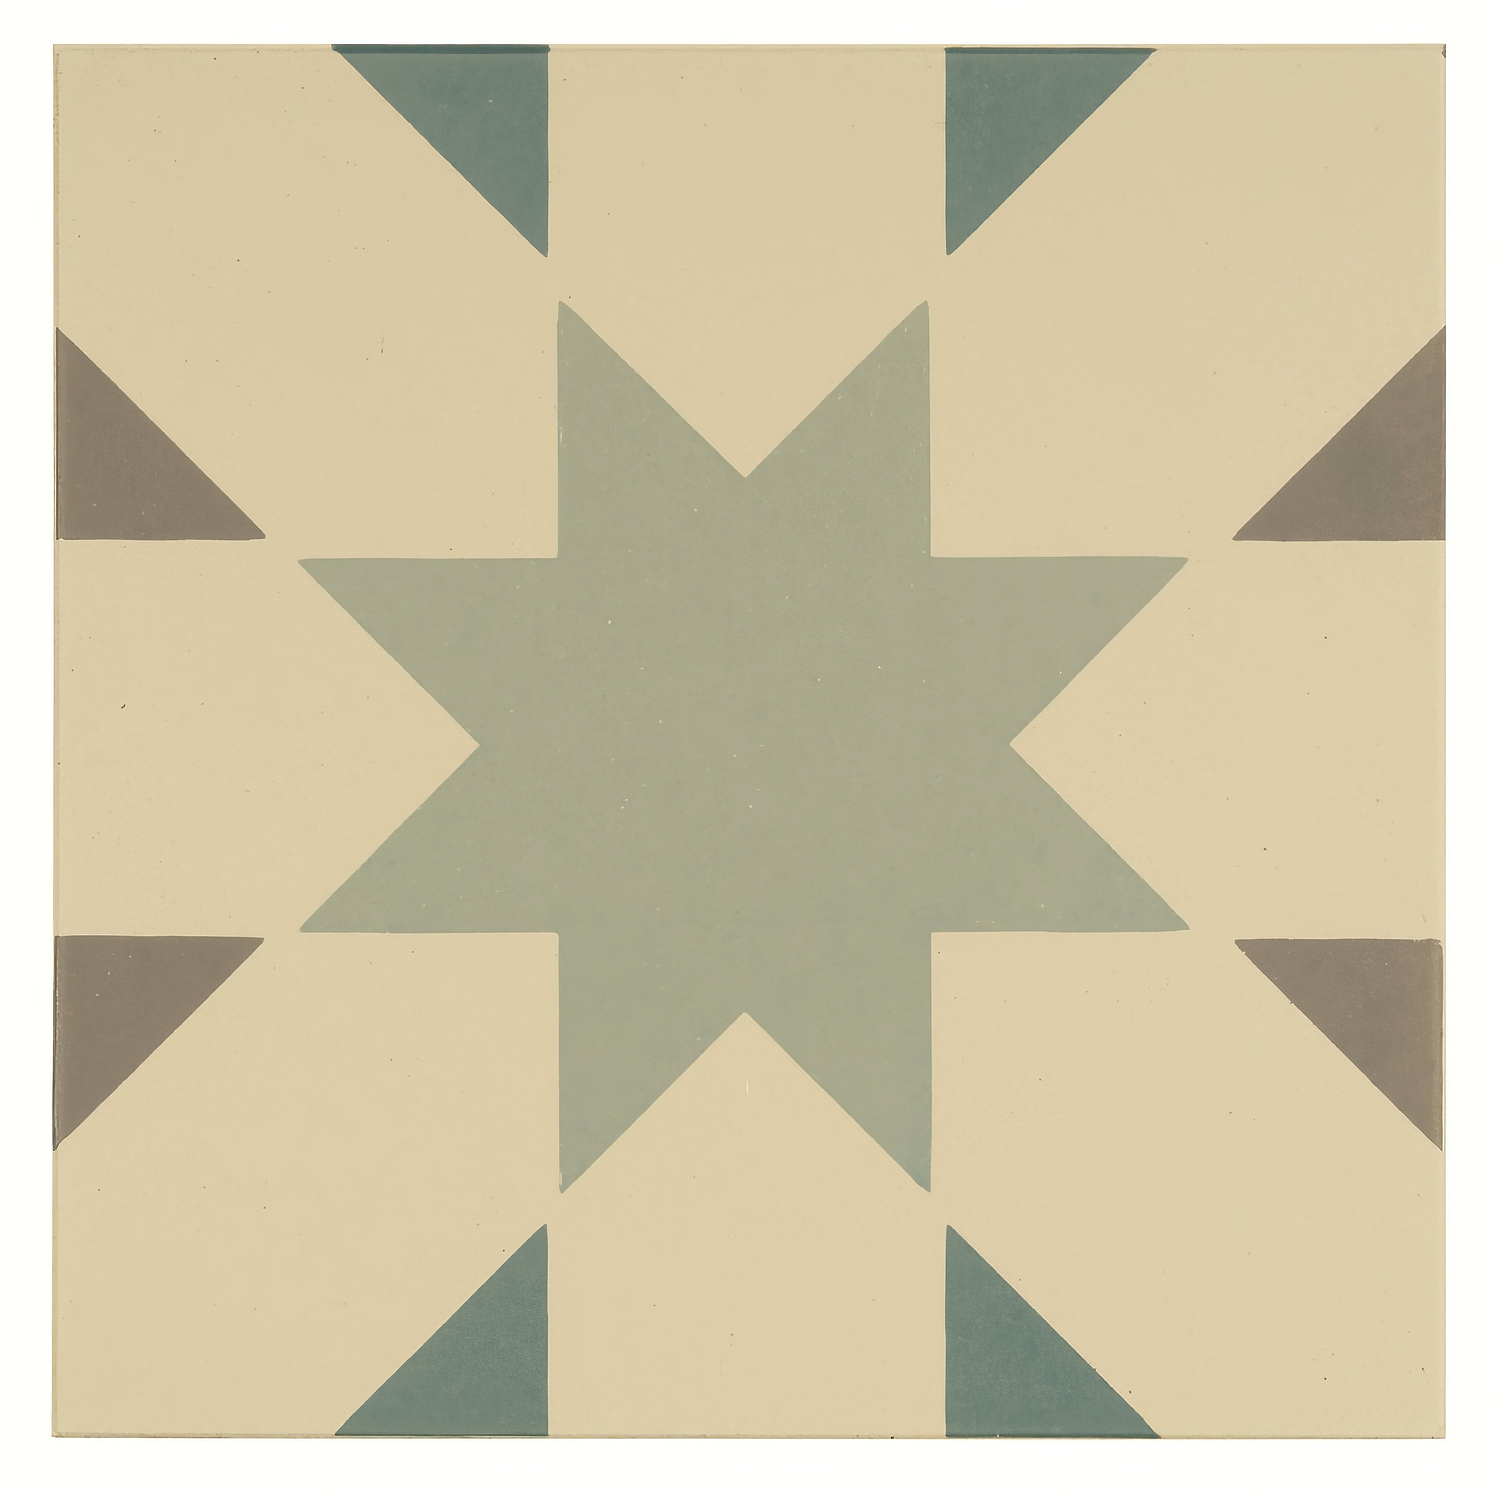 Seville Light Grey, Light Jade and Dark Jade on White - Hyperion Tiles